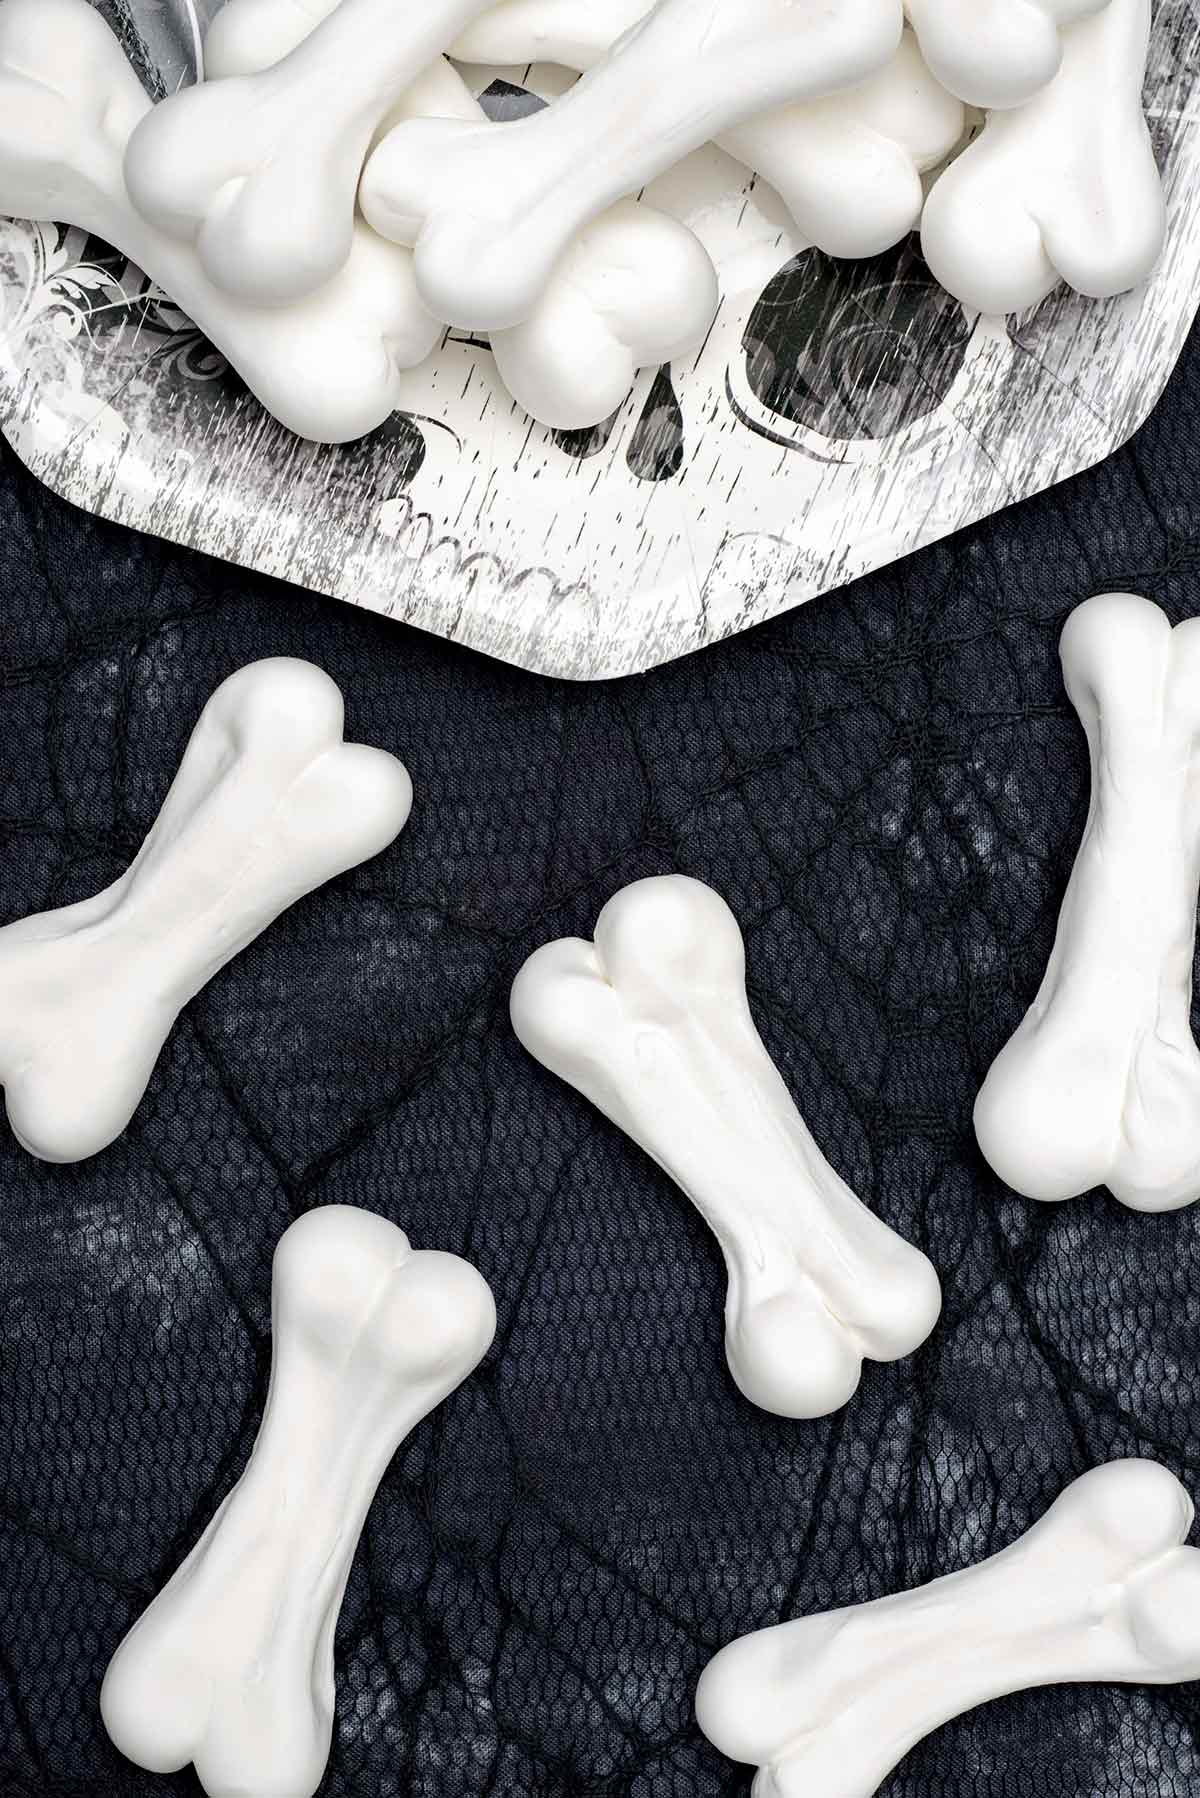 تتراكم عظام الميرانغ في عيد الهالوين على طبق ورقي وتتناثر على مفرش أسود من نسيج العنكبوت بجانب الطبق.